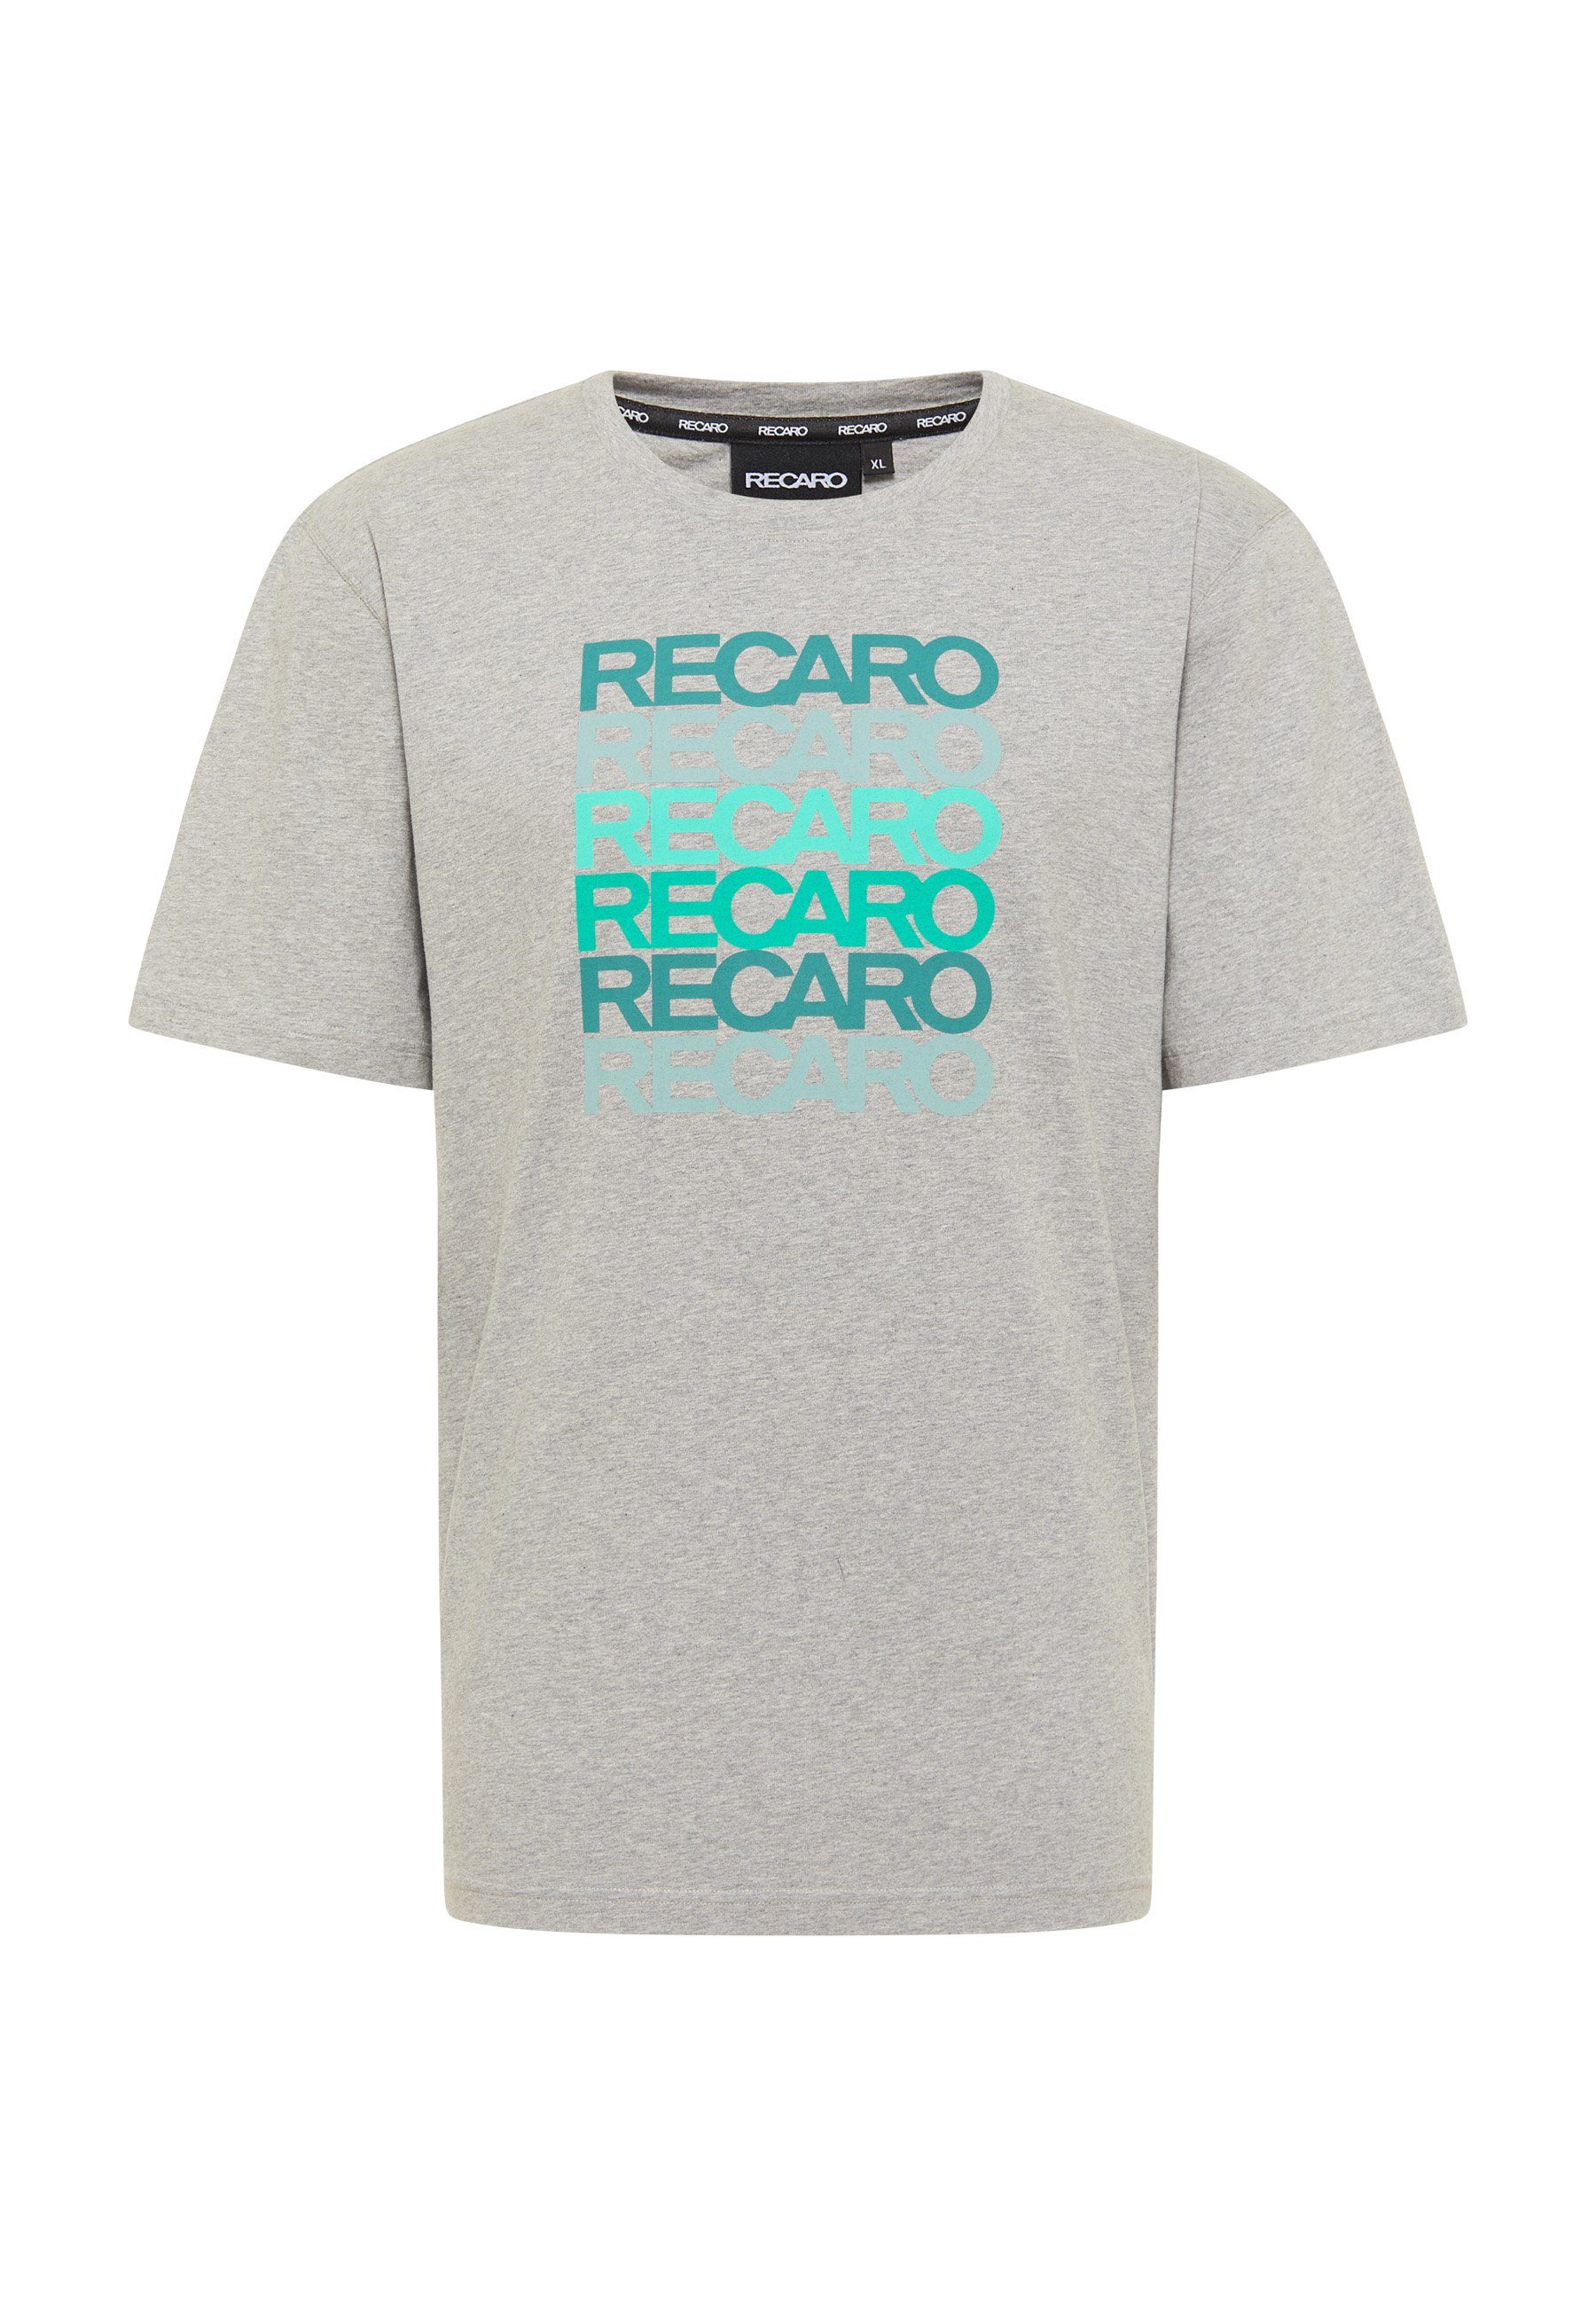 RECARO T-Shirt RECARO T-Shirt Spektrum Herren Shirt, Rundhals 100% Baumwolle Made in Europe